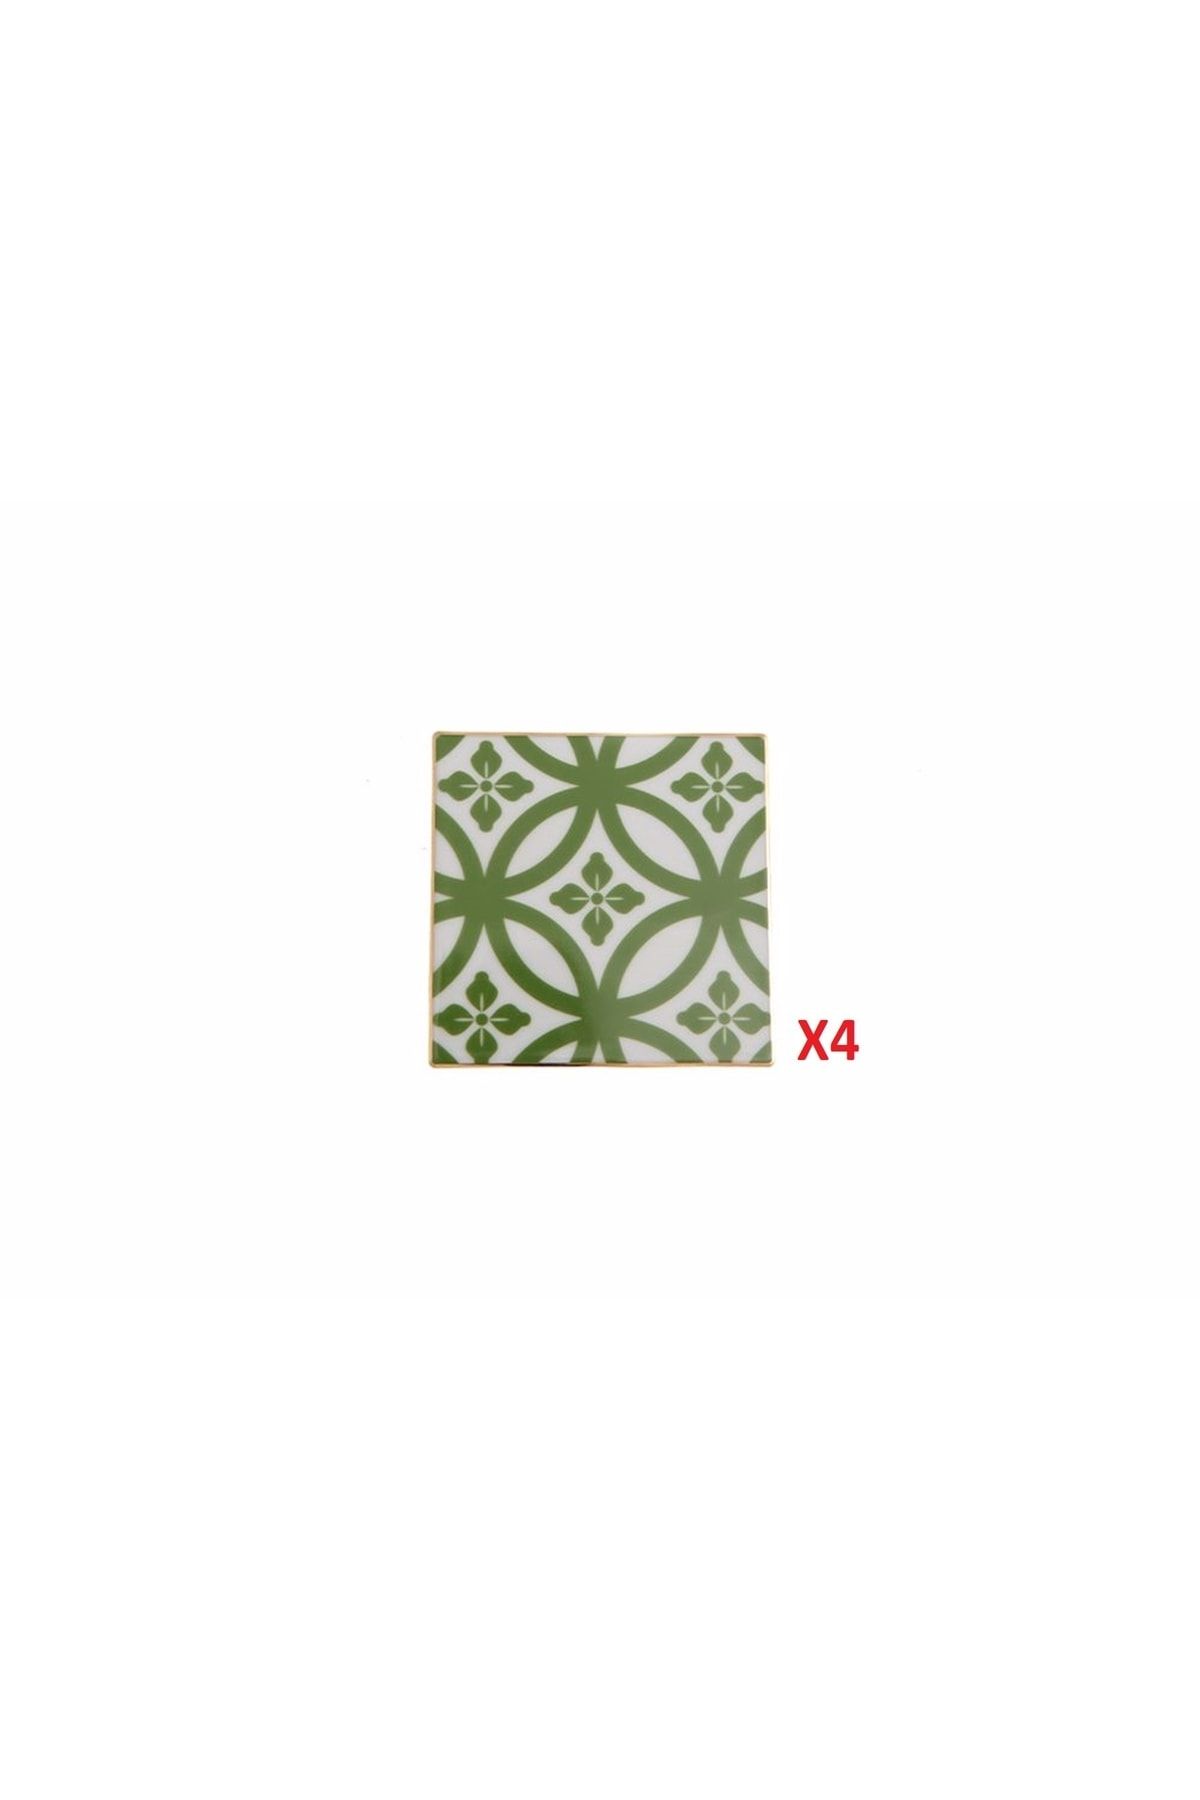 Porland Morocco Yeşil Bardak Altlığı 10x10cm 4'lü 04ap021641